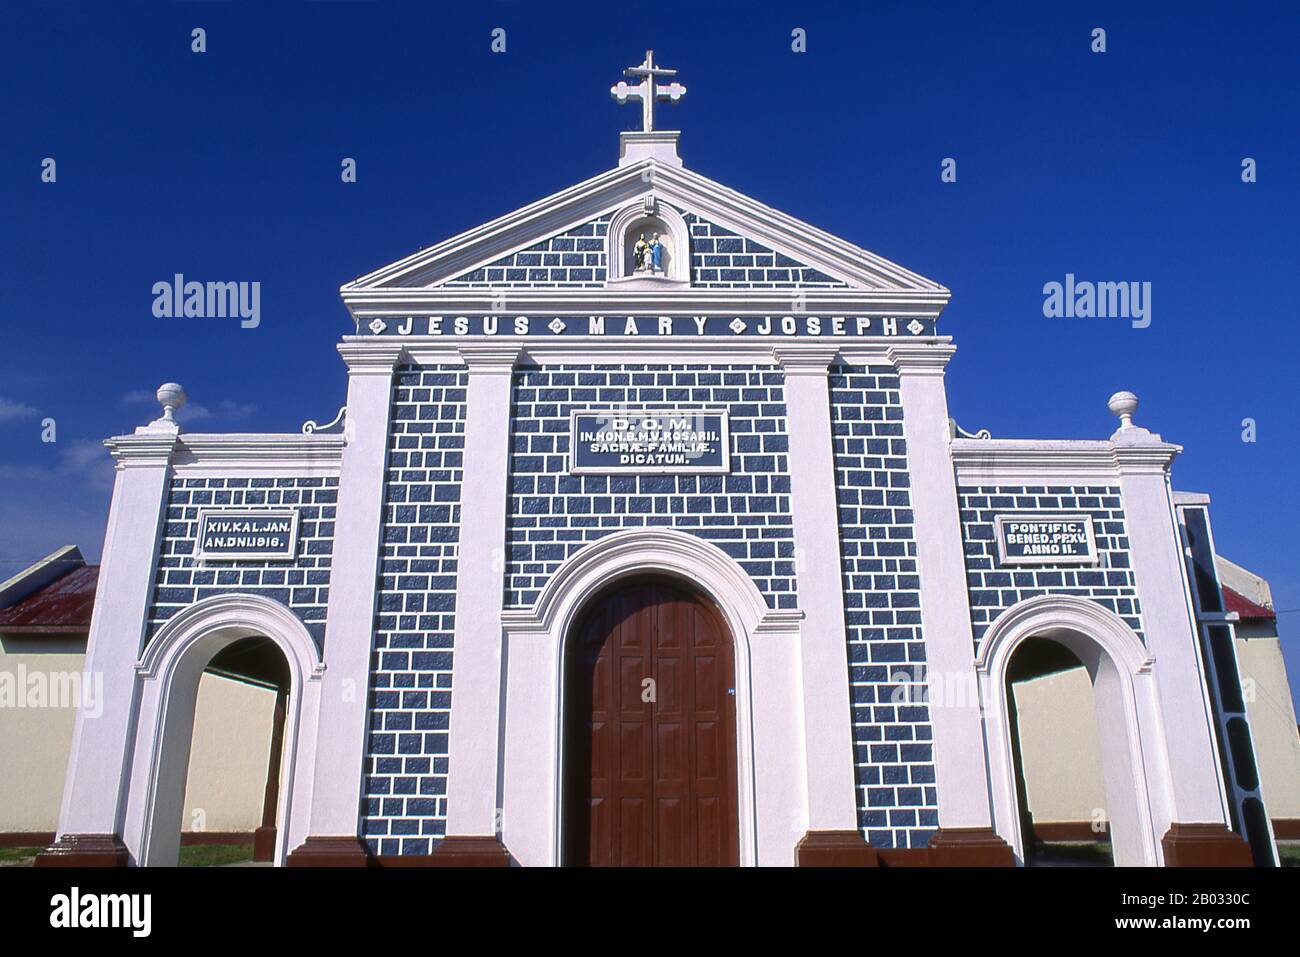 Costruita originariamente nel 1916, la chiesa cattolica del Santo Rosario è stata completamente rinnovata nel 2013. Il cristianesimo, introdotto in Sri Lanka dai portoghesi, è prevalentemente di varietà cattolica romana e più visibile lungo la costa occidentale, soprattutto intorno a Negombo. Foto Stock